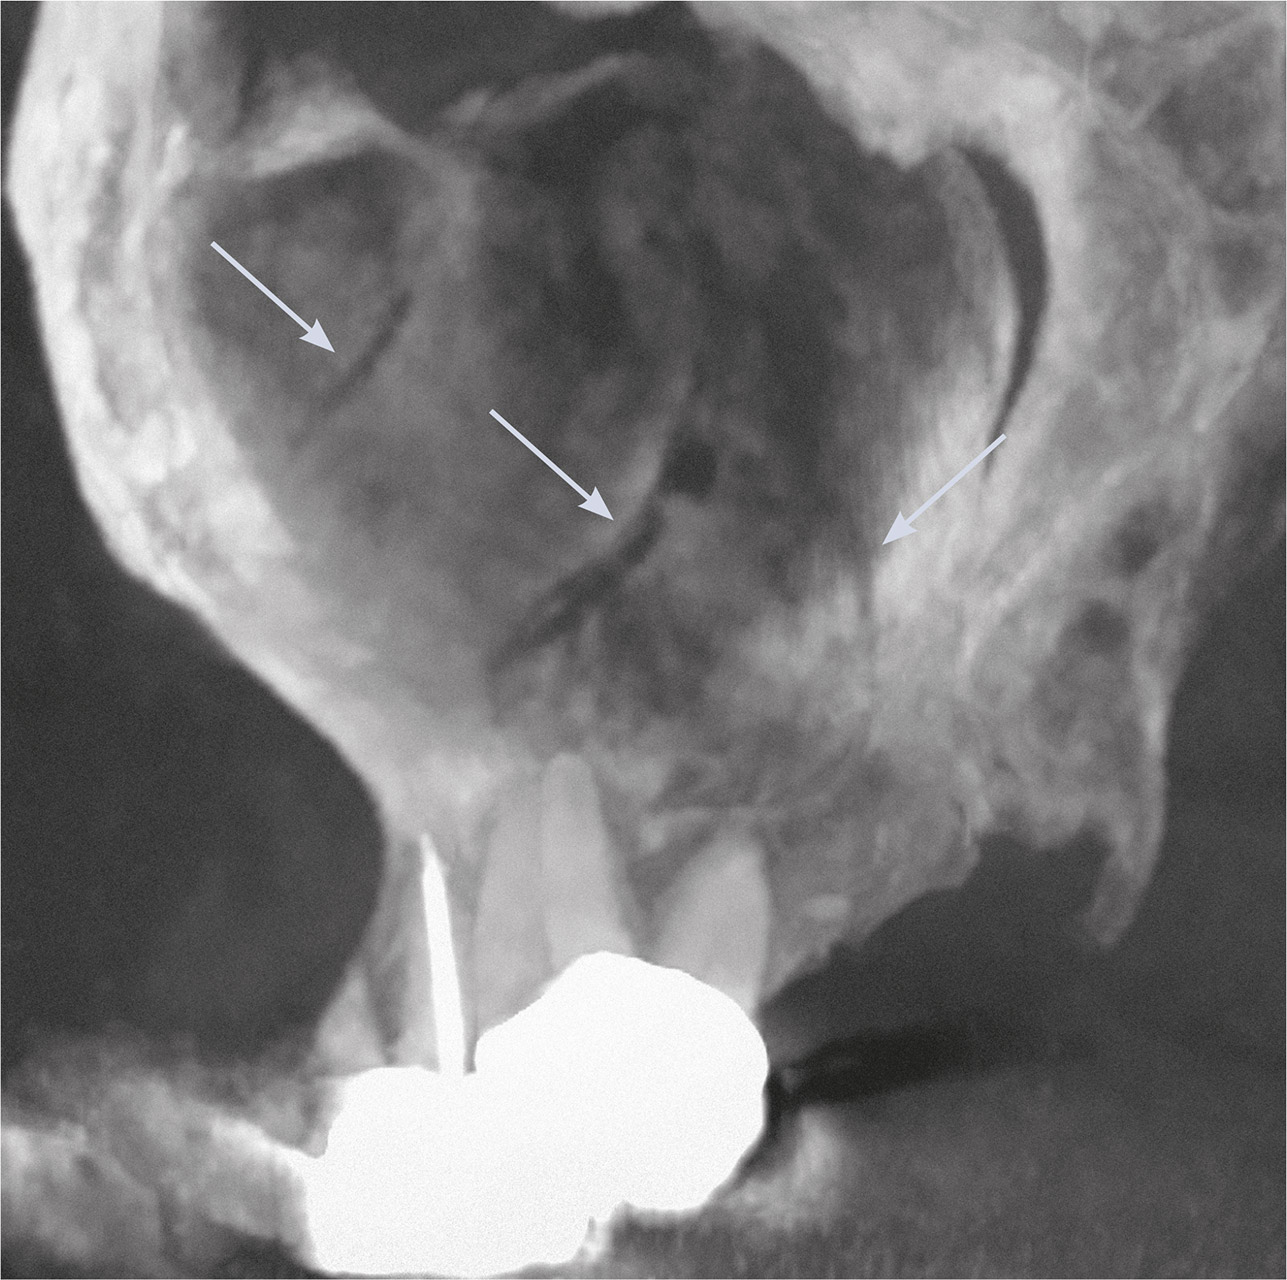 Abb. 1c DVT – schräg-sagittale Maximumintensitäts­projektion der dorsalen Kieferhöhlenwand. Die Pfeile weisen auf Gefäßkanäle in der Wand hin.